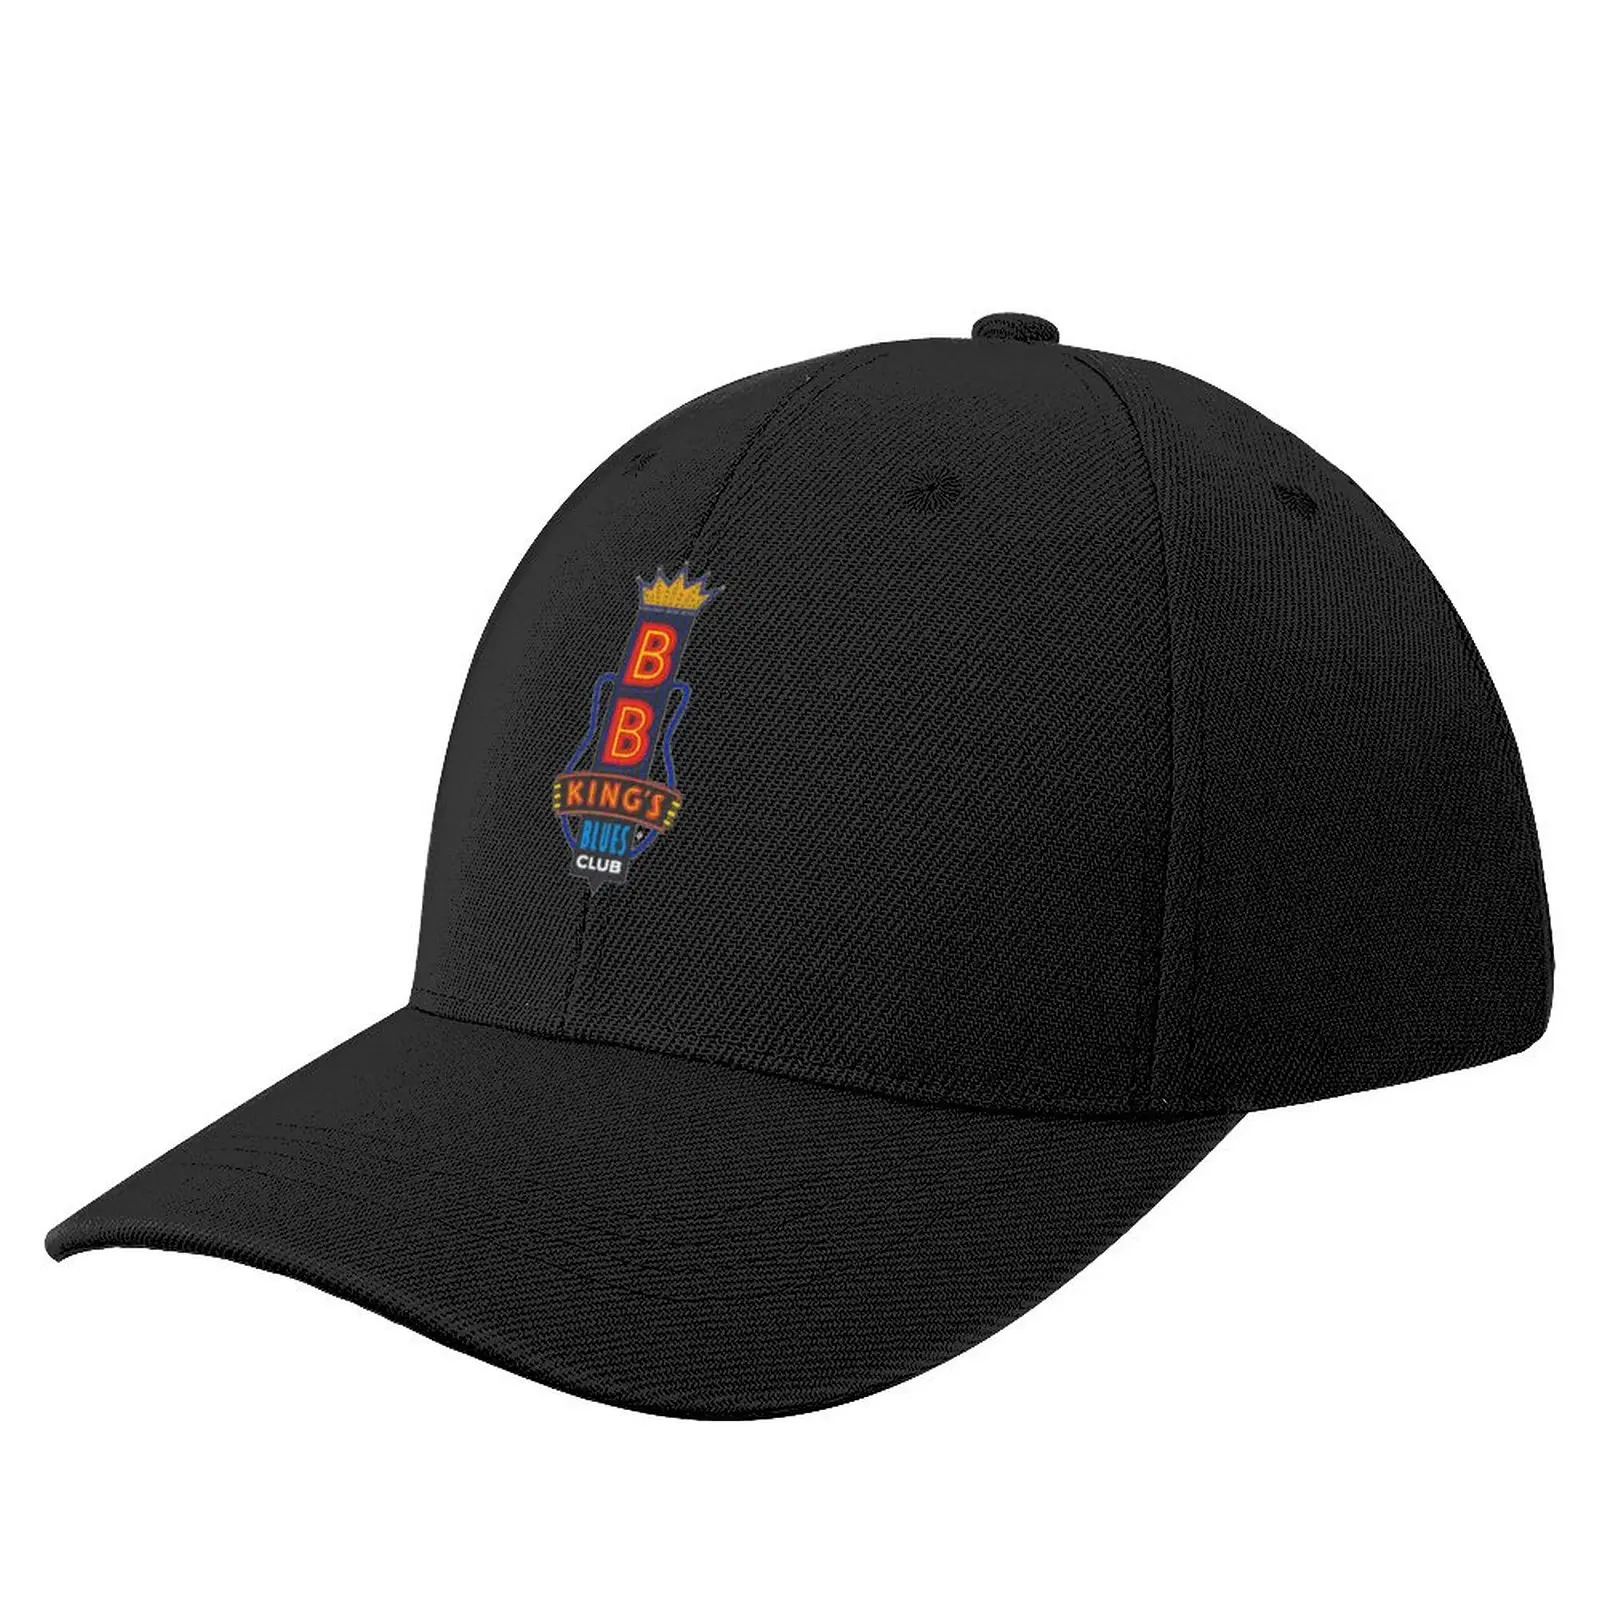 

Beale ST BB Kings Baseball Cap Hat Man For The Sun Hat Luxury Brand Hat For Men Women's